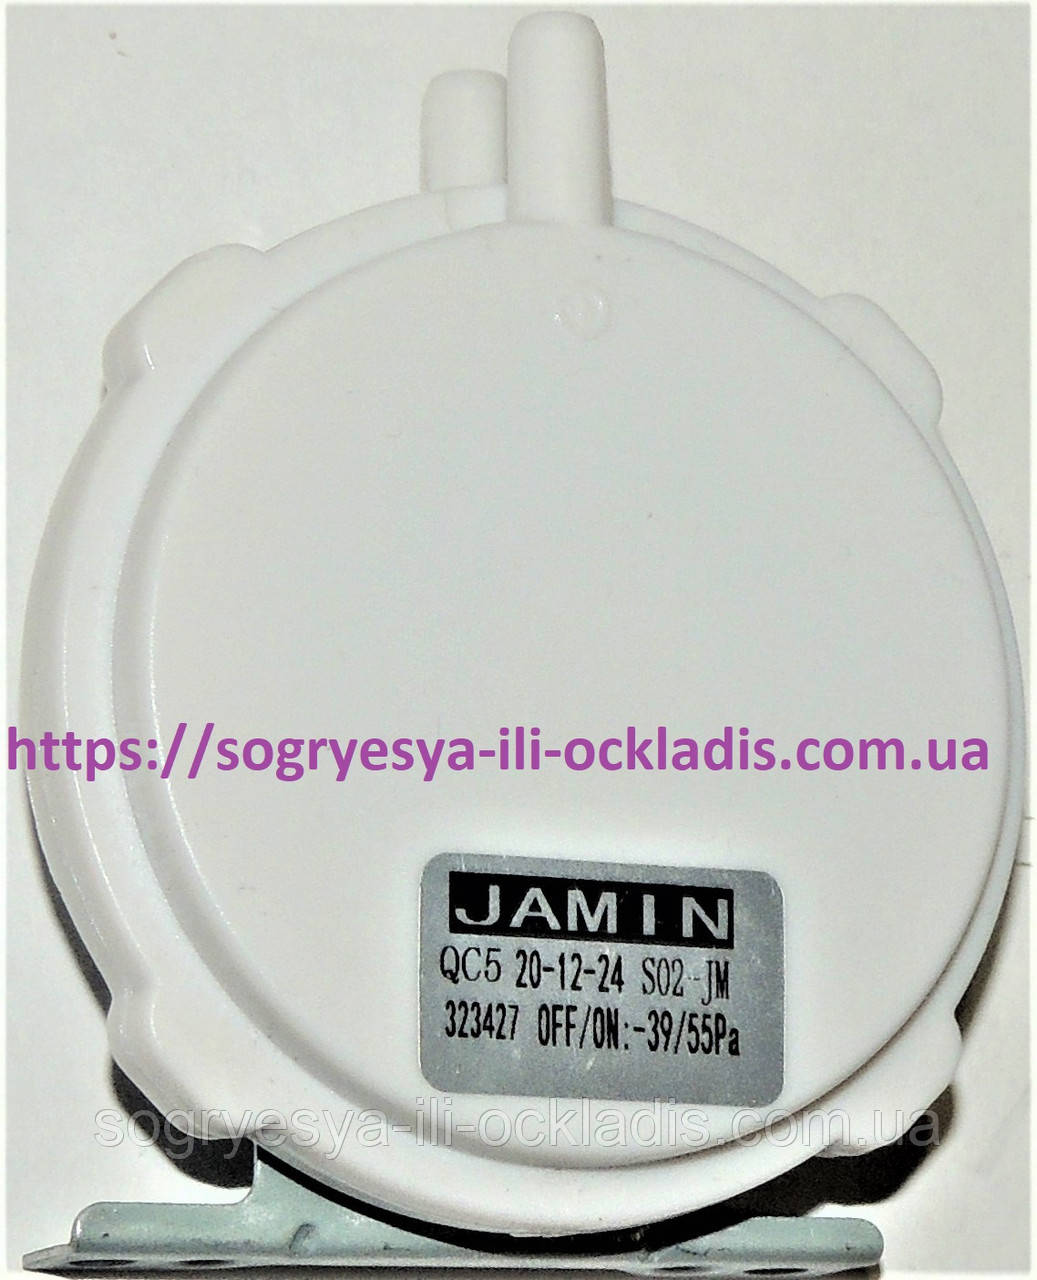 Датчик тиску повітря вентилятора JAMIN 39/55 Pа (б.ф.у, Кіт) котлів газових, арт. QC5, к.з. 00541